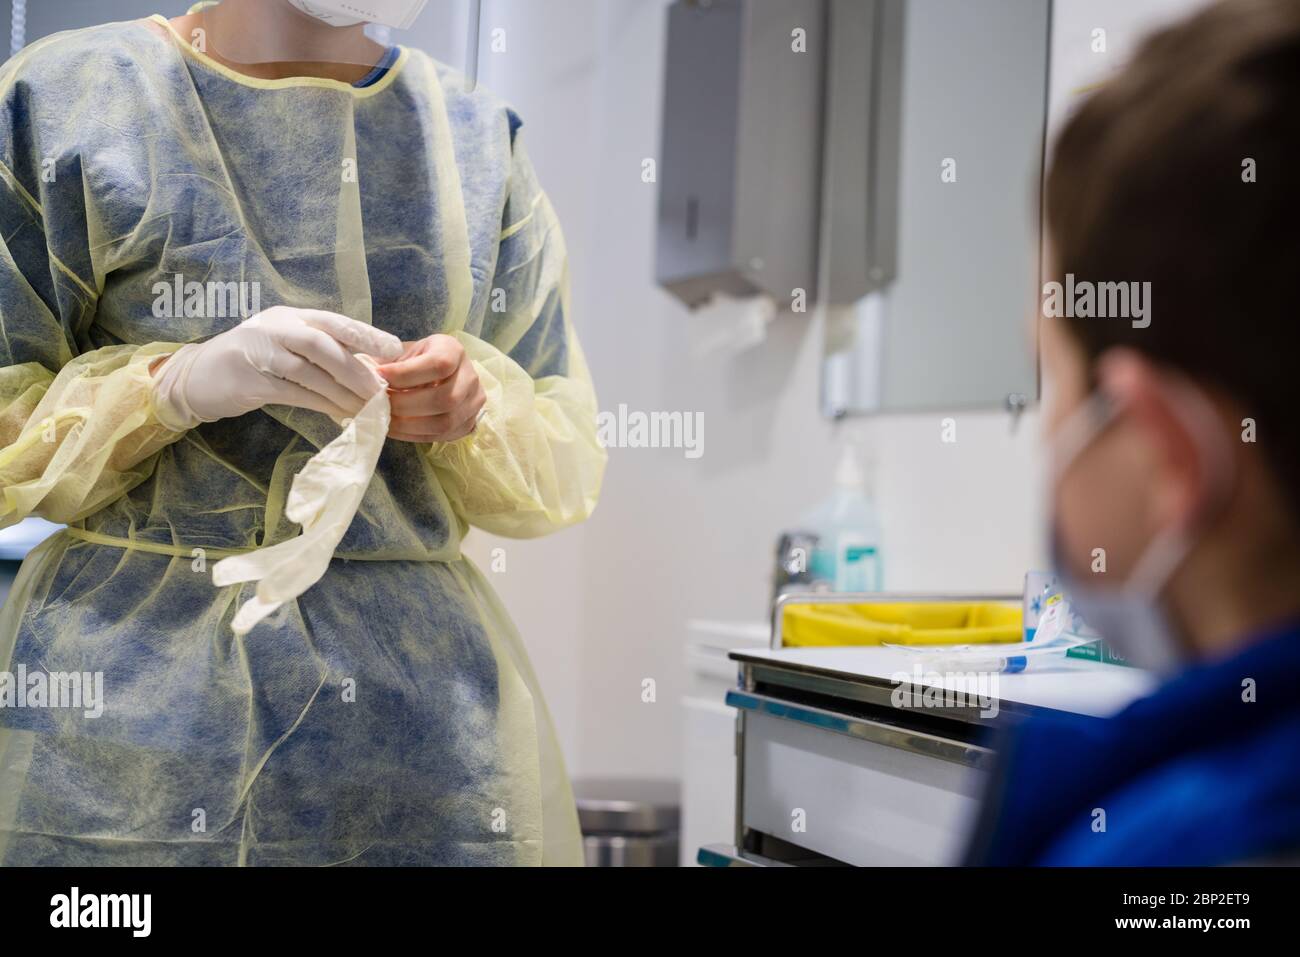 Infirmière mettant des gants avant un écouvillon nasal, dépistage de Covid 19 sur un enfant, Centre médical Cosem Mirosmenil, Paris Banque D'Images